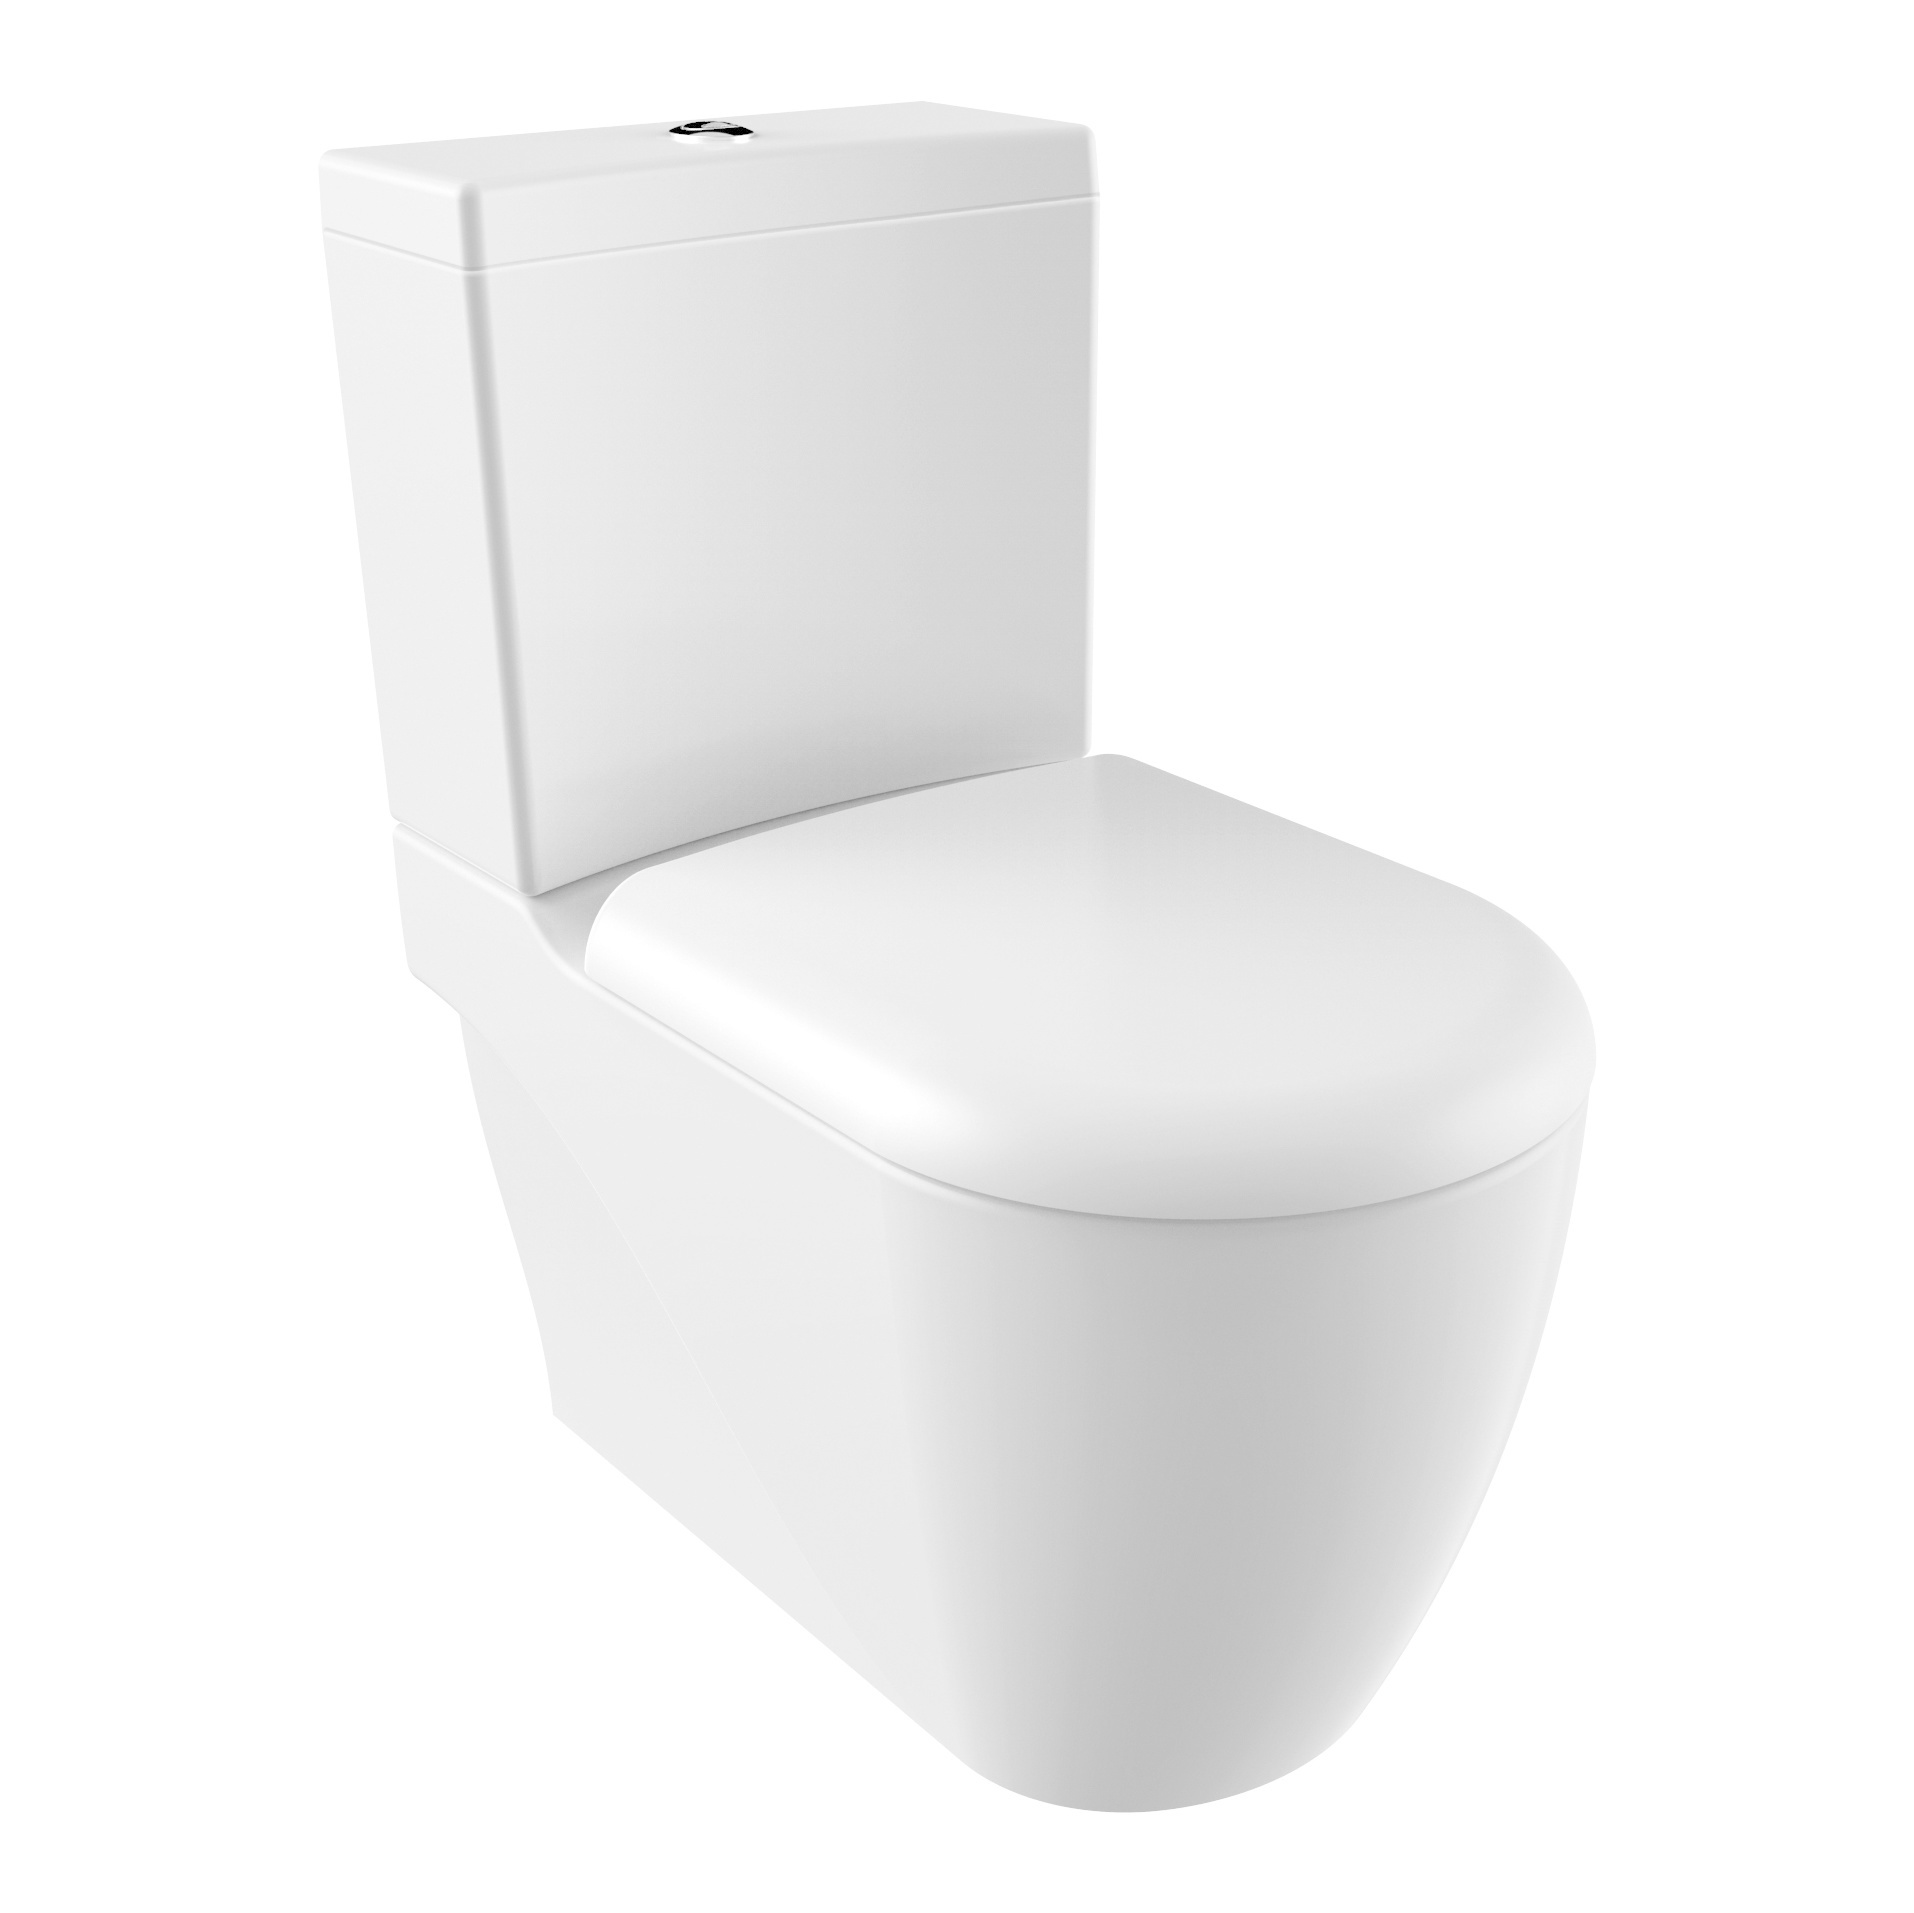 Staand Toilet met Bidet Creavit GRANDE XXL Duoblok incl. WC-bril